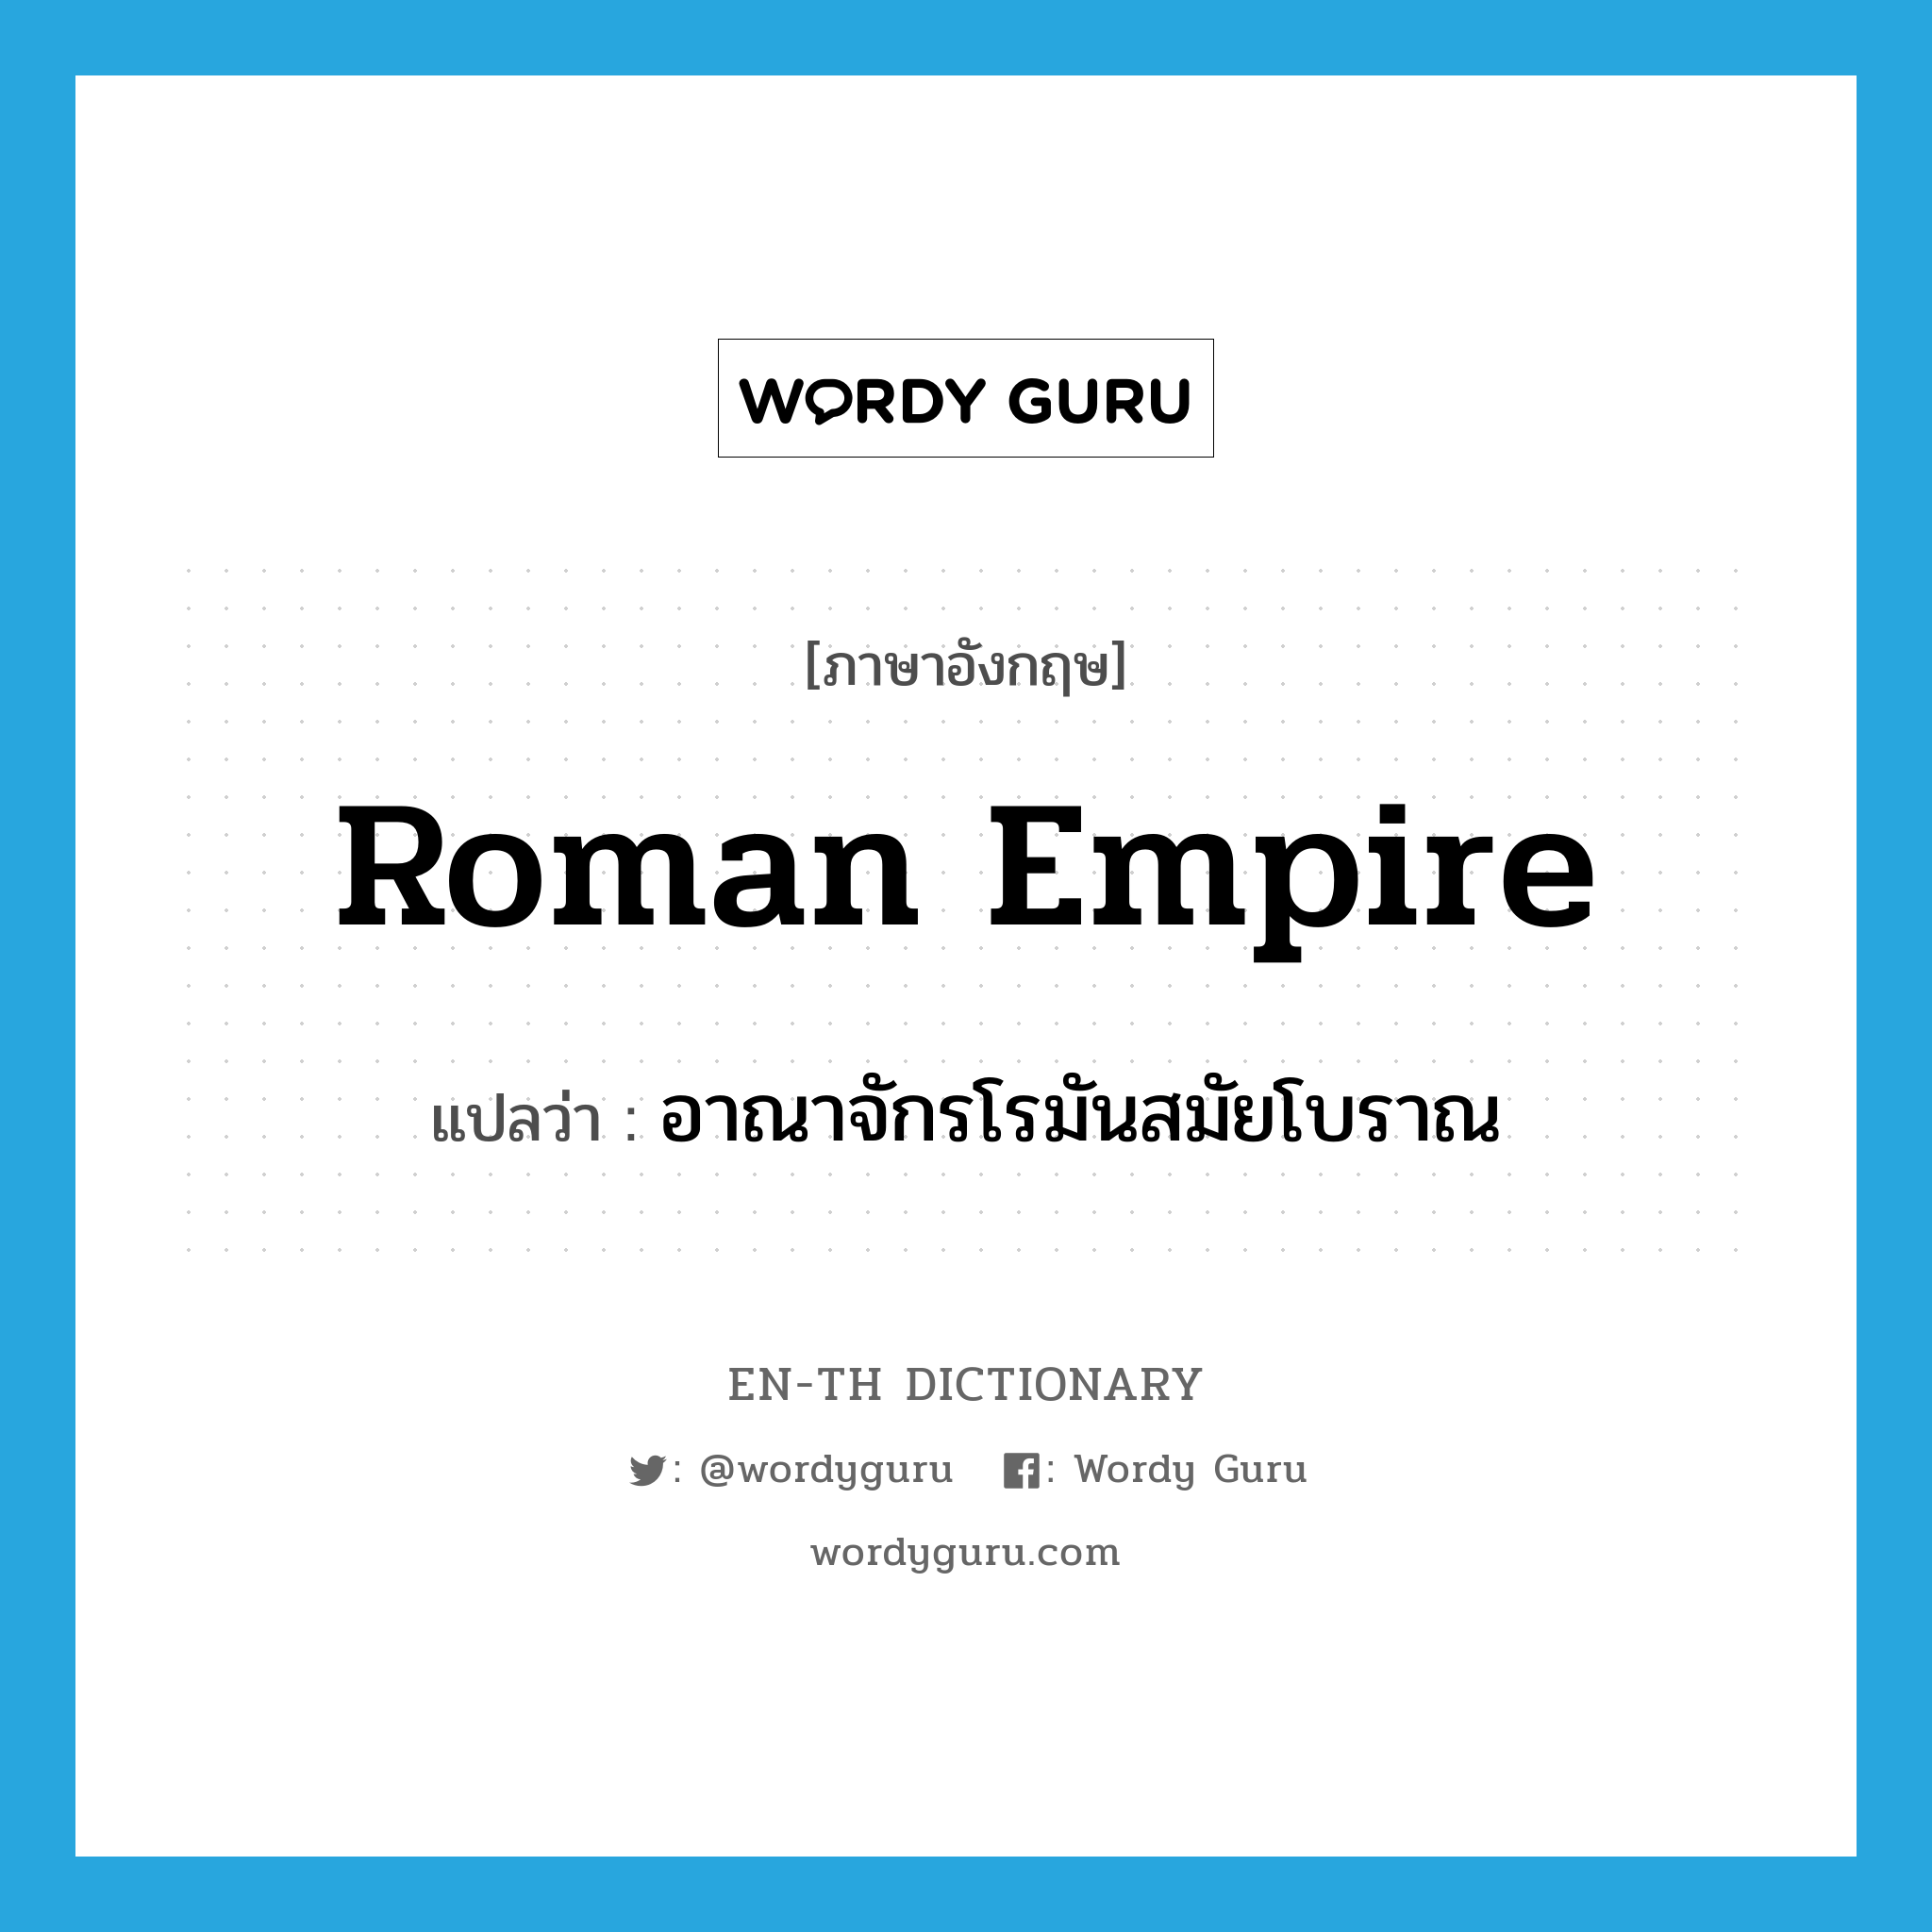 Roman Empire แปลว่า?, คำศัพท์ภาษาอังกฤษ Roman Empire แปลว่า อาณาจักรโรมันสมัยโบราณ ประเภท N หมวด N